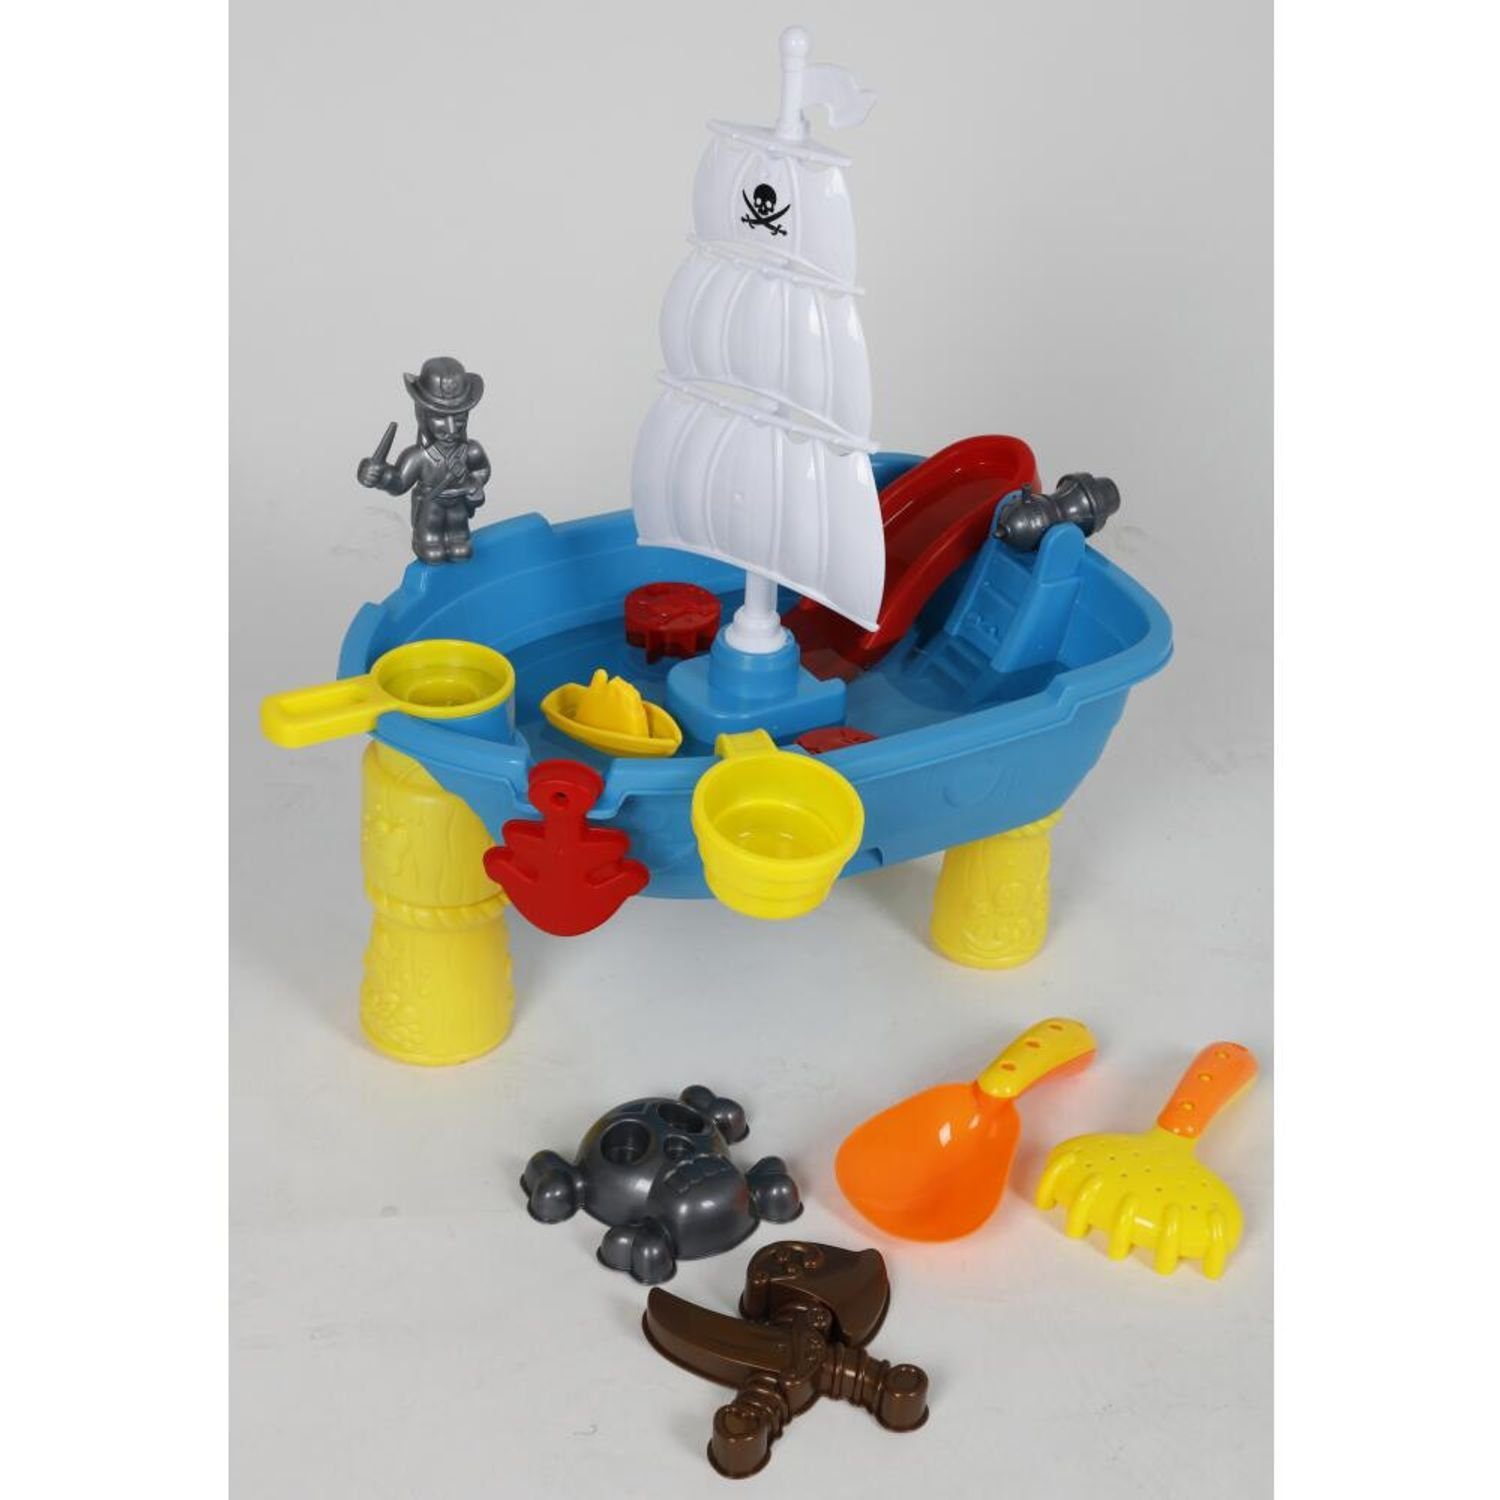 EDCO Gartentisch Spieltisch Sandkasten Wasser Kinder Spielzeug Schaufel Förmchen Harke